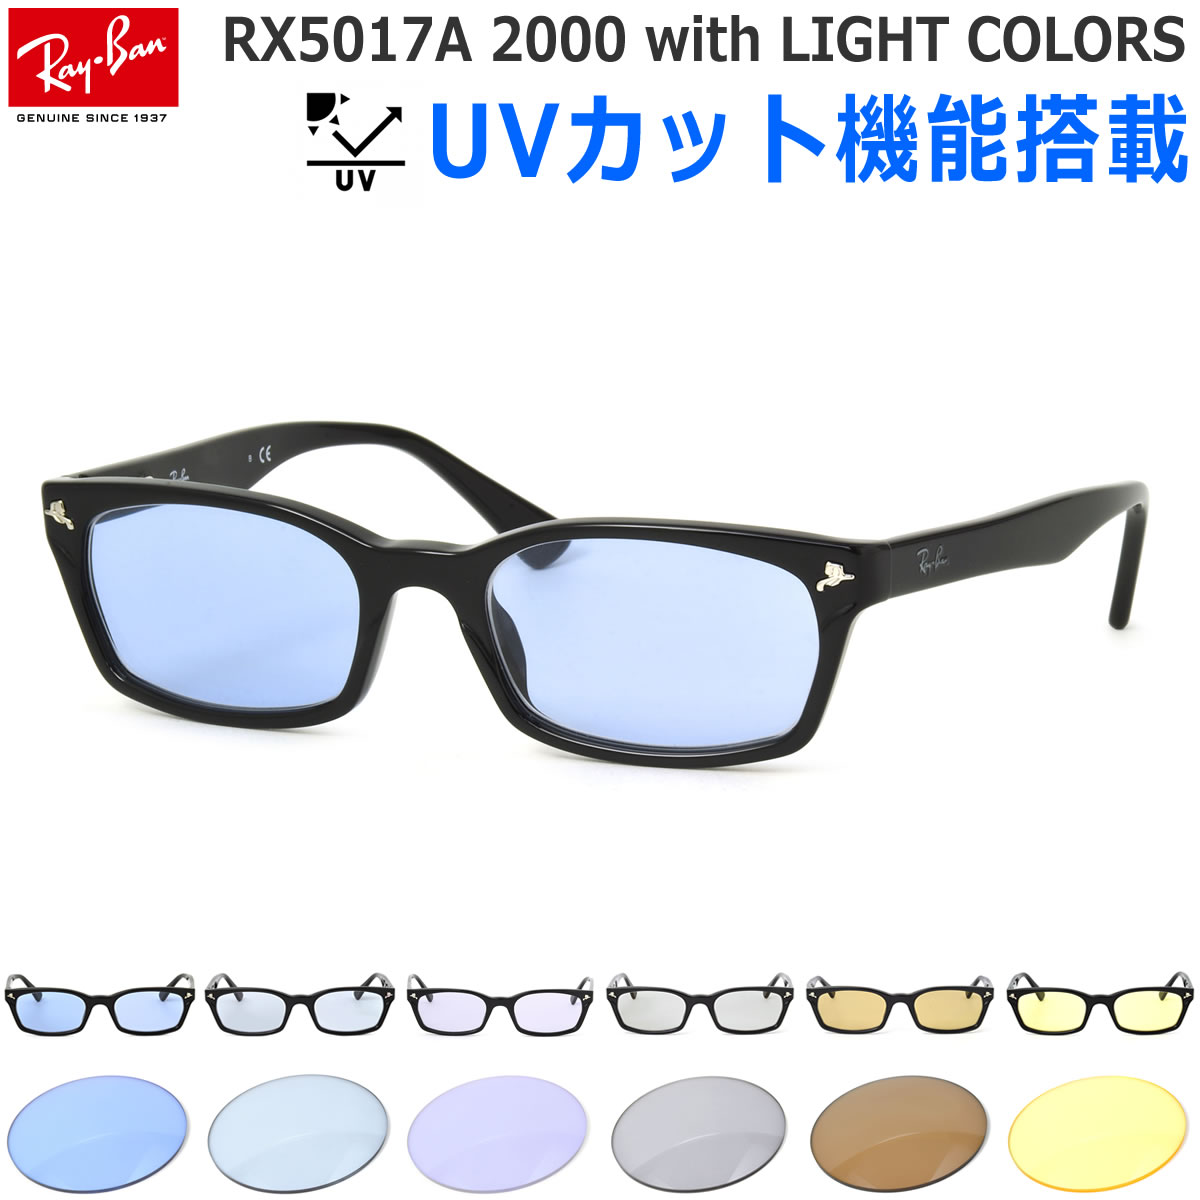 レイバン 眼鏡 サングラス ライトカラー Ray-Ban UVカット付き ライトブルー RX5017A 2000 52サイズ レイバン